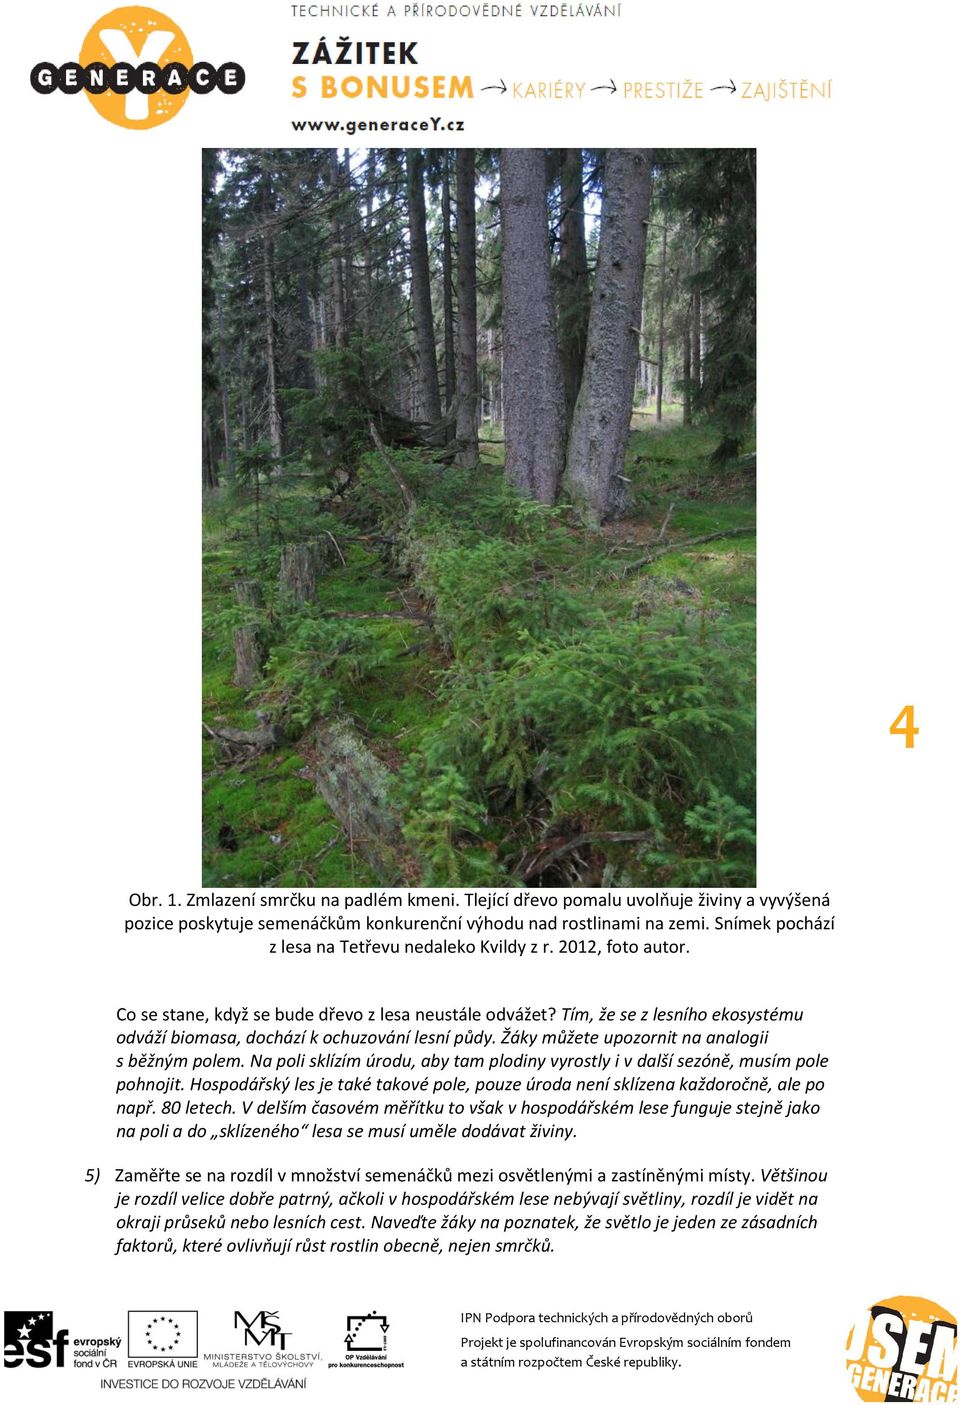 Tím, že se z lesního ekosystému odváží biomasa, dochází k ochuzování lesní půdy. Žáky můžete upozornit na analogii s běžným polem.